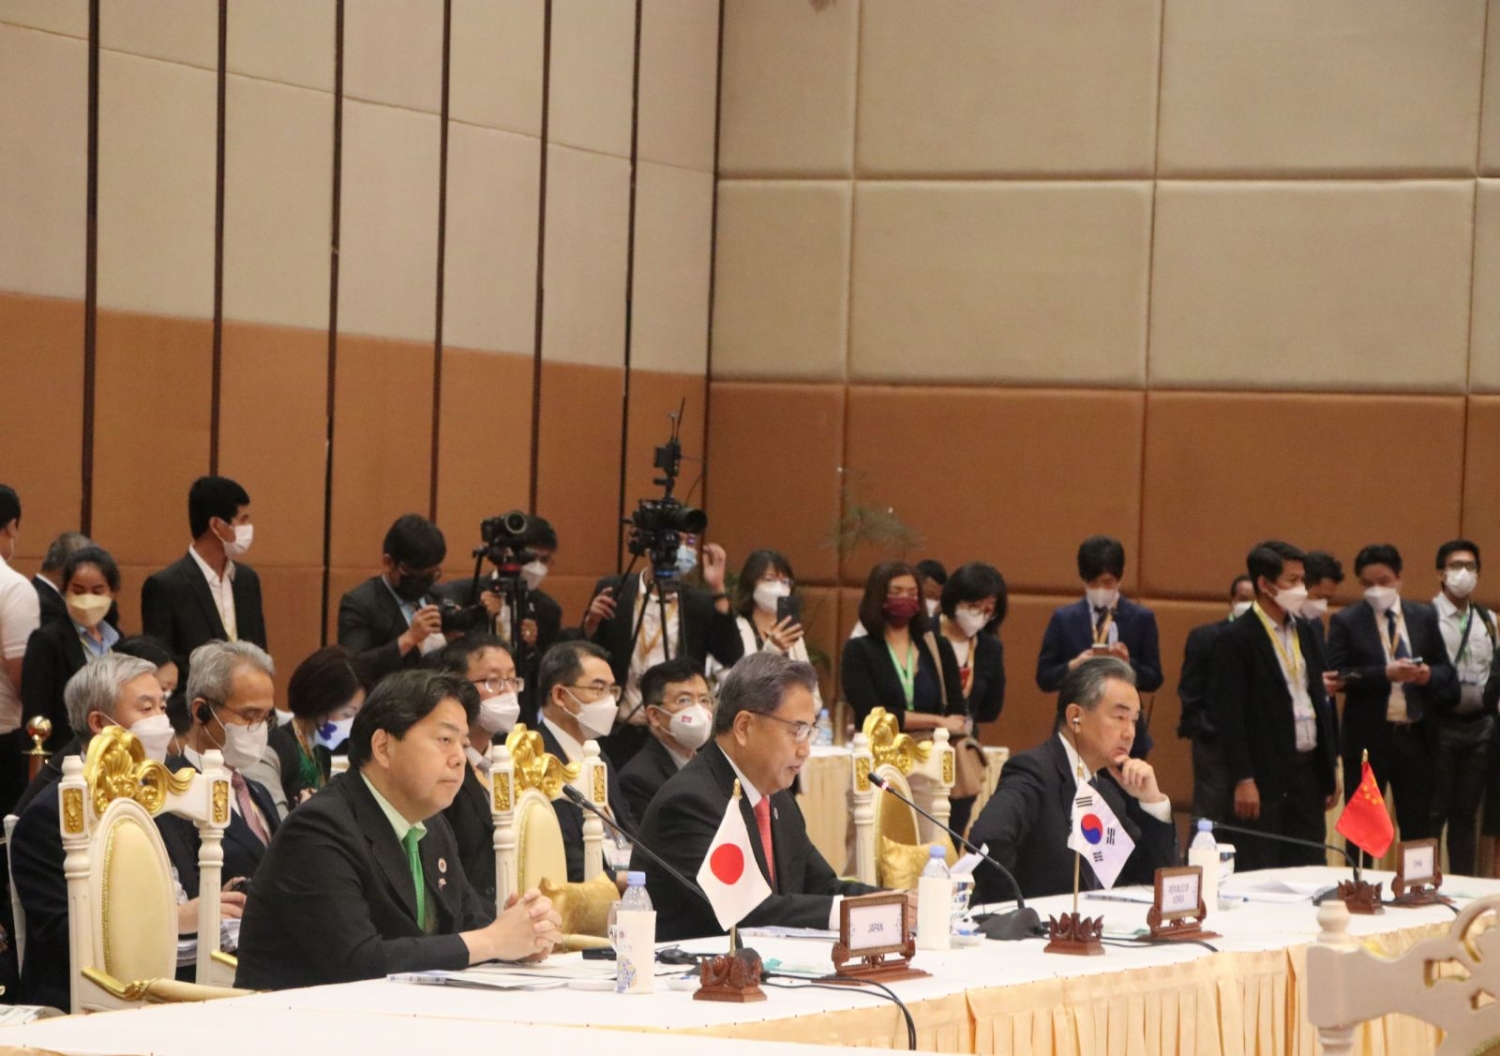 Hội nghị Bộ trưởng Ngoại giao ASEAN với các đối tác